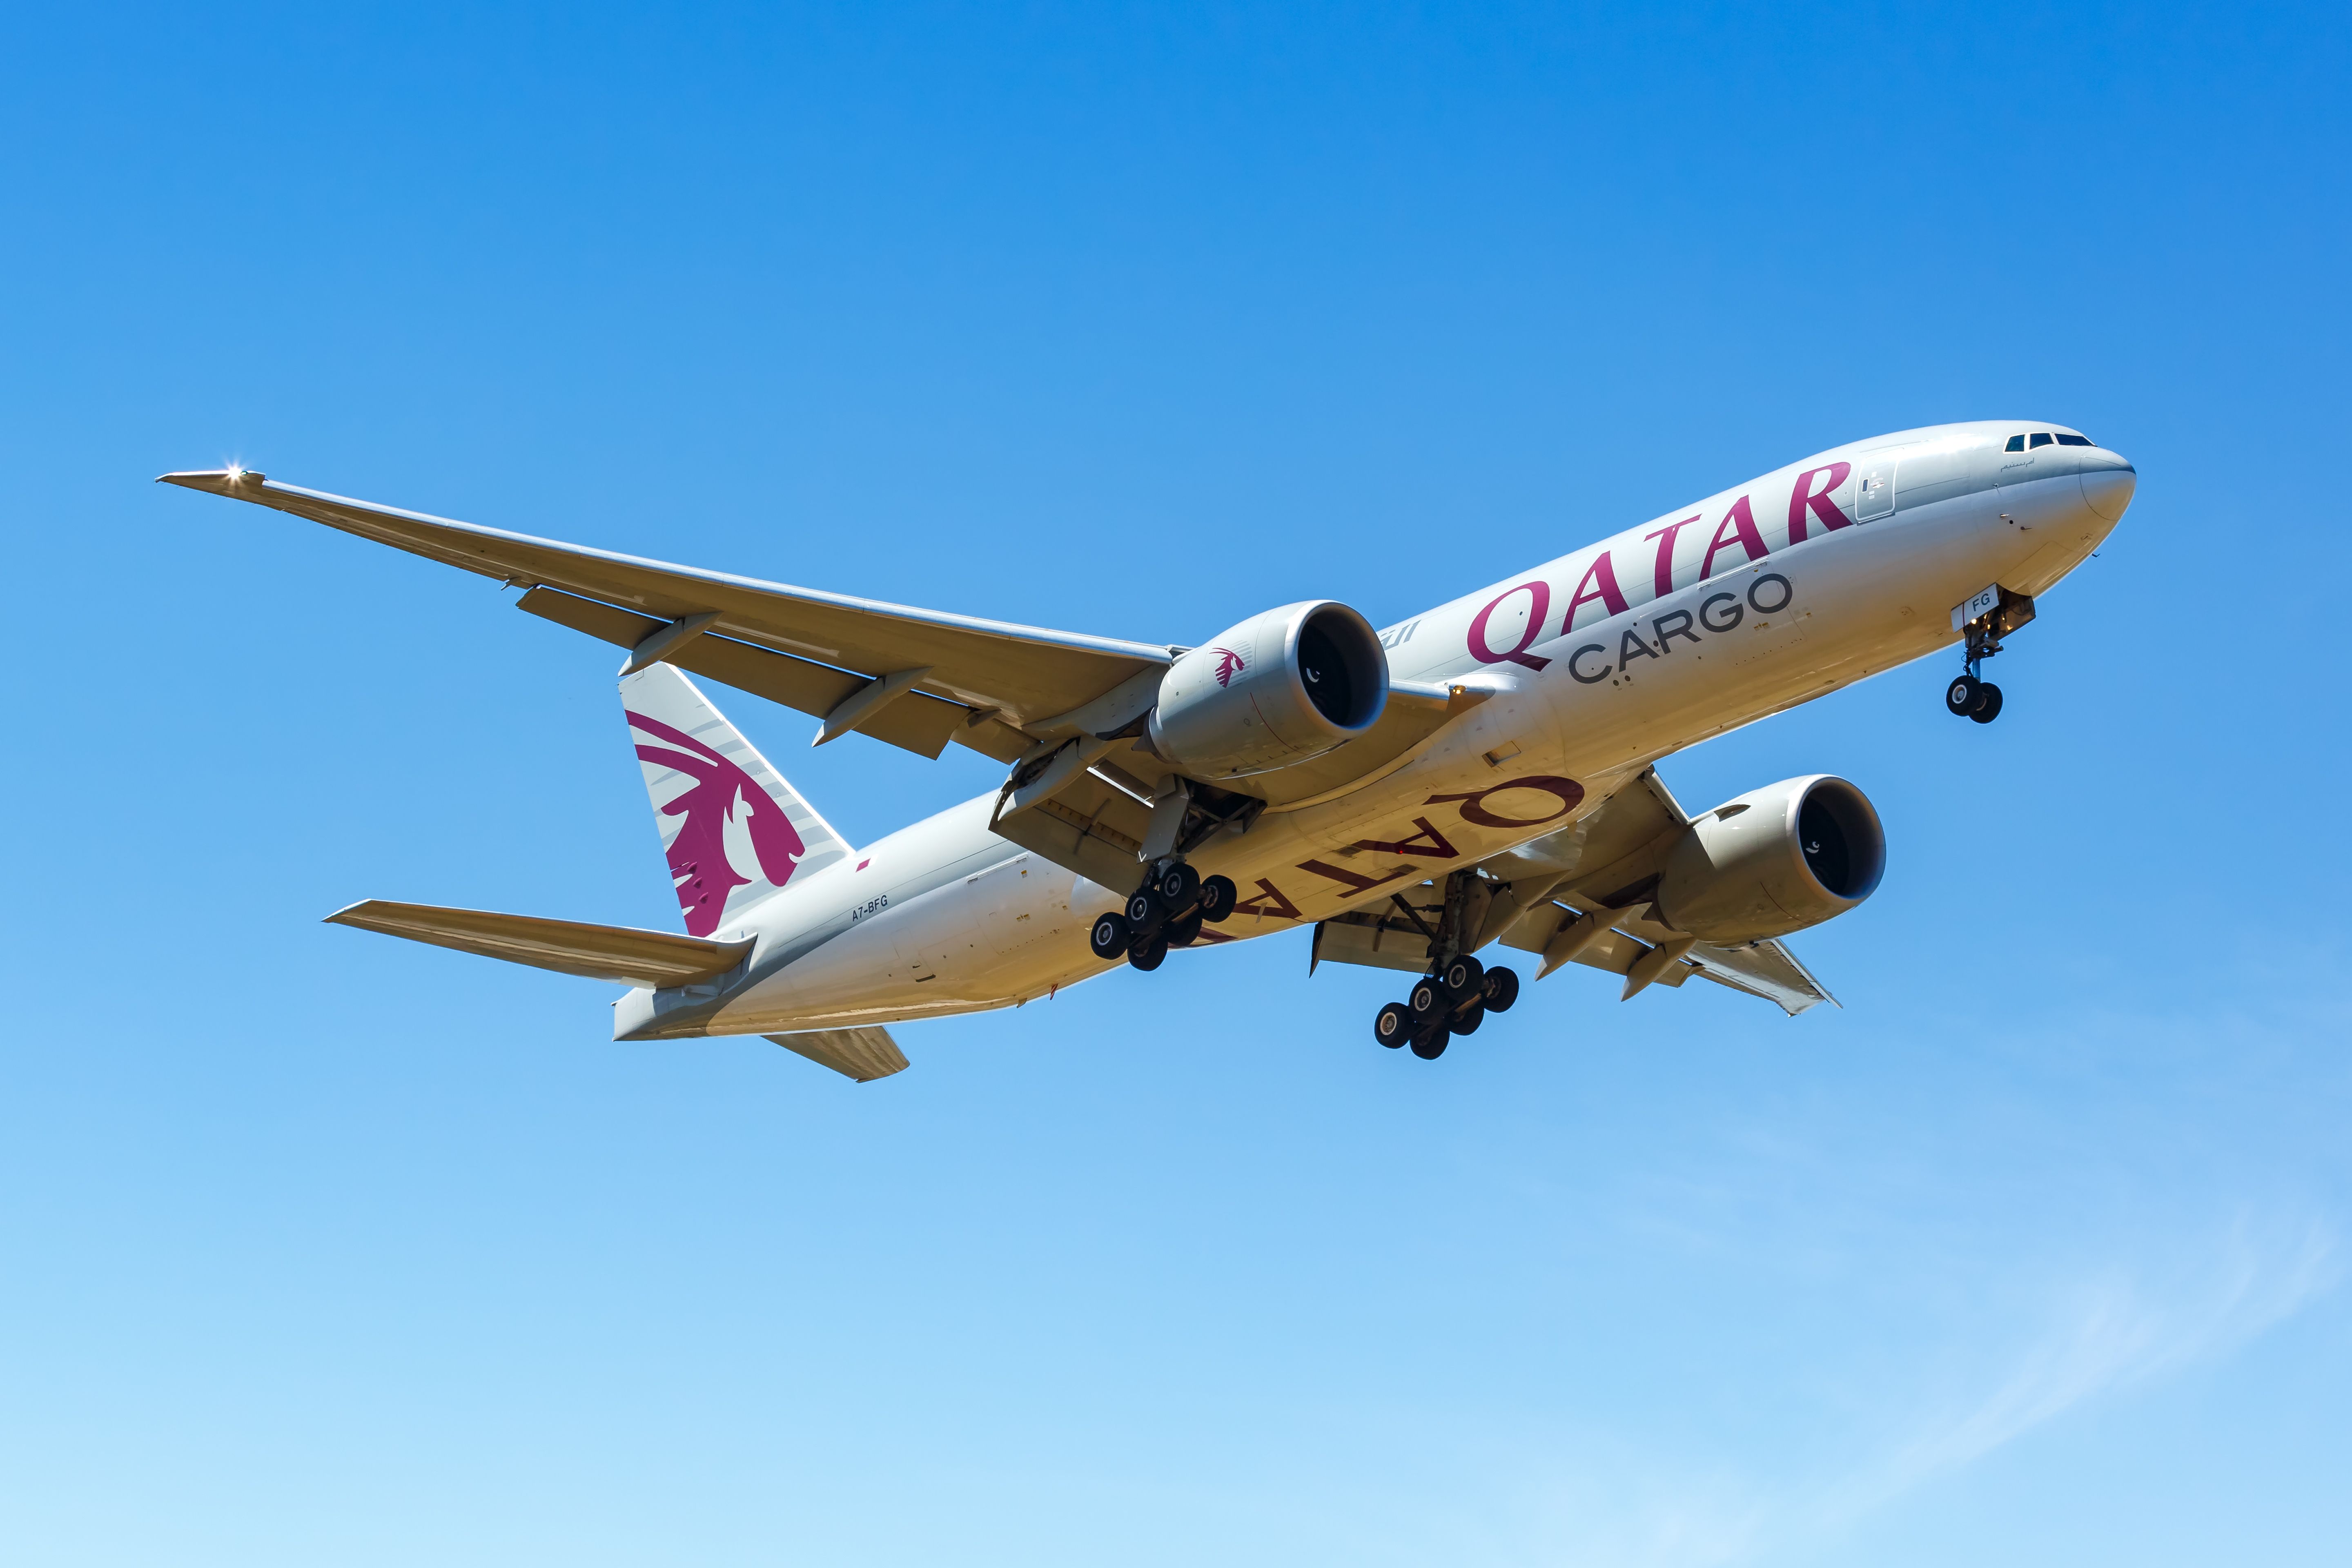 Ground Vehicle Damages Qatar Airways Boeing 777 Freighter At ...